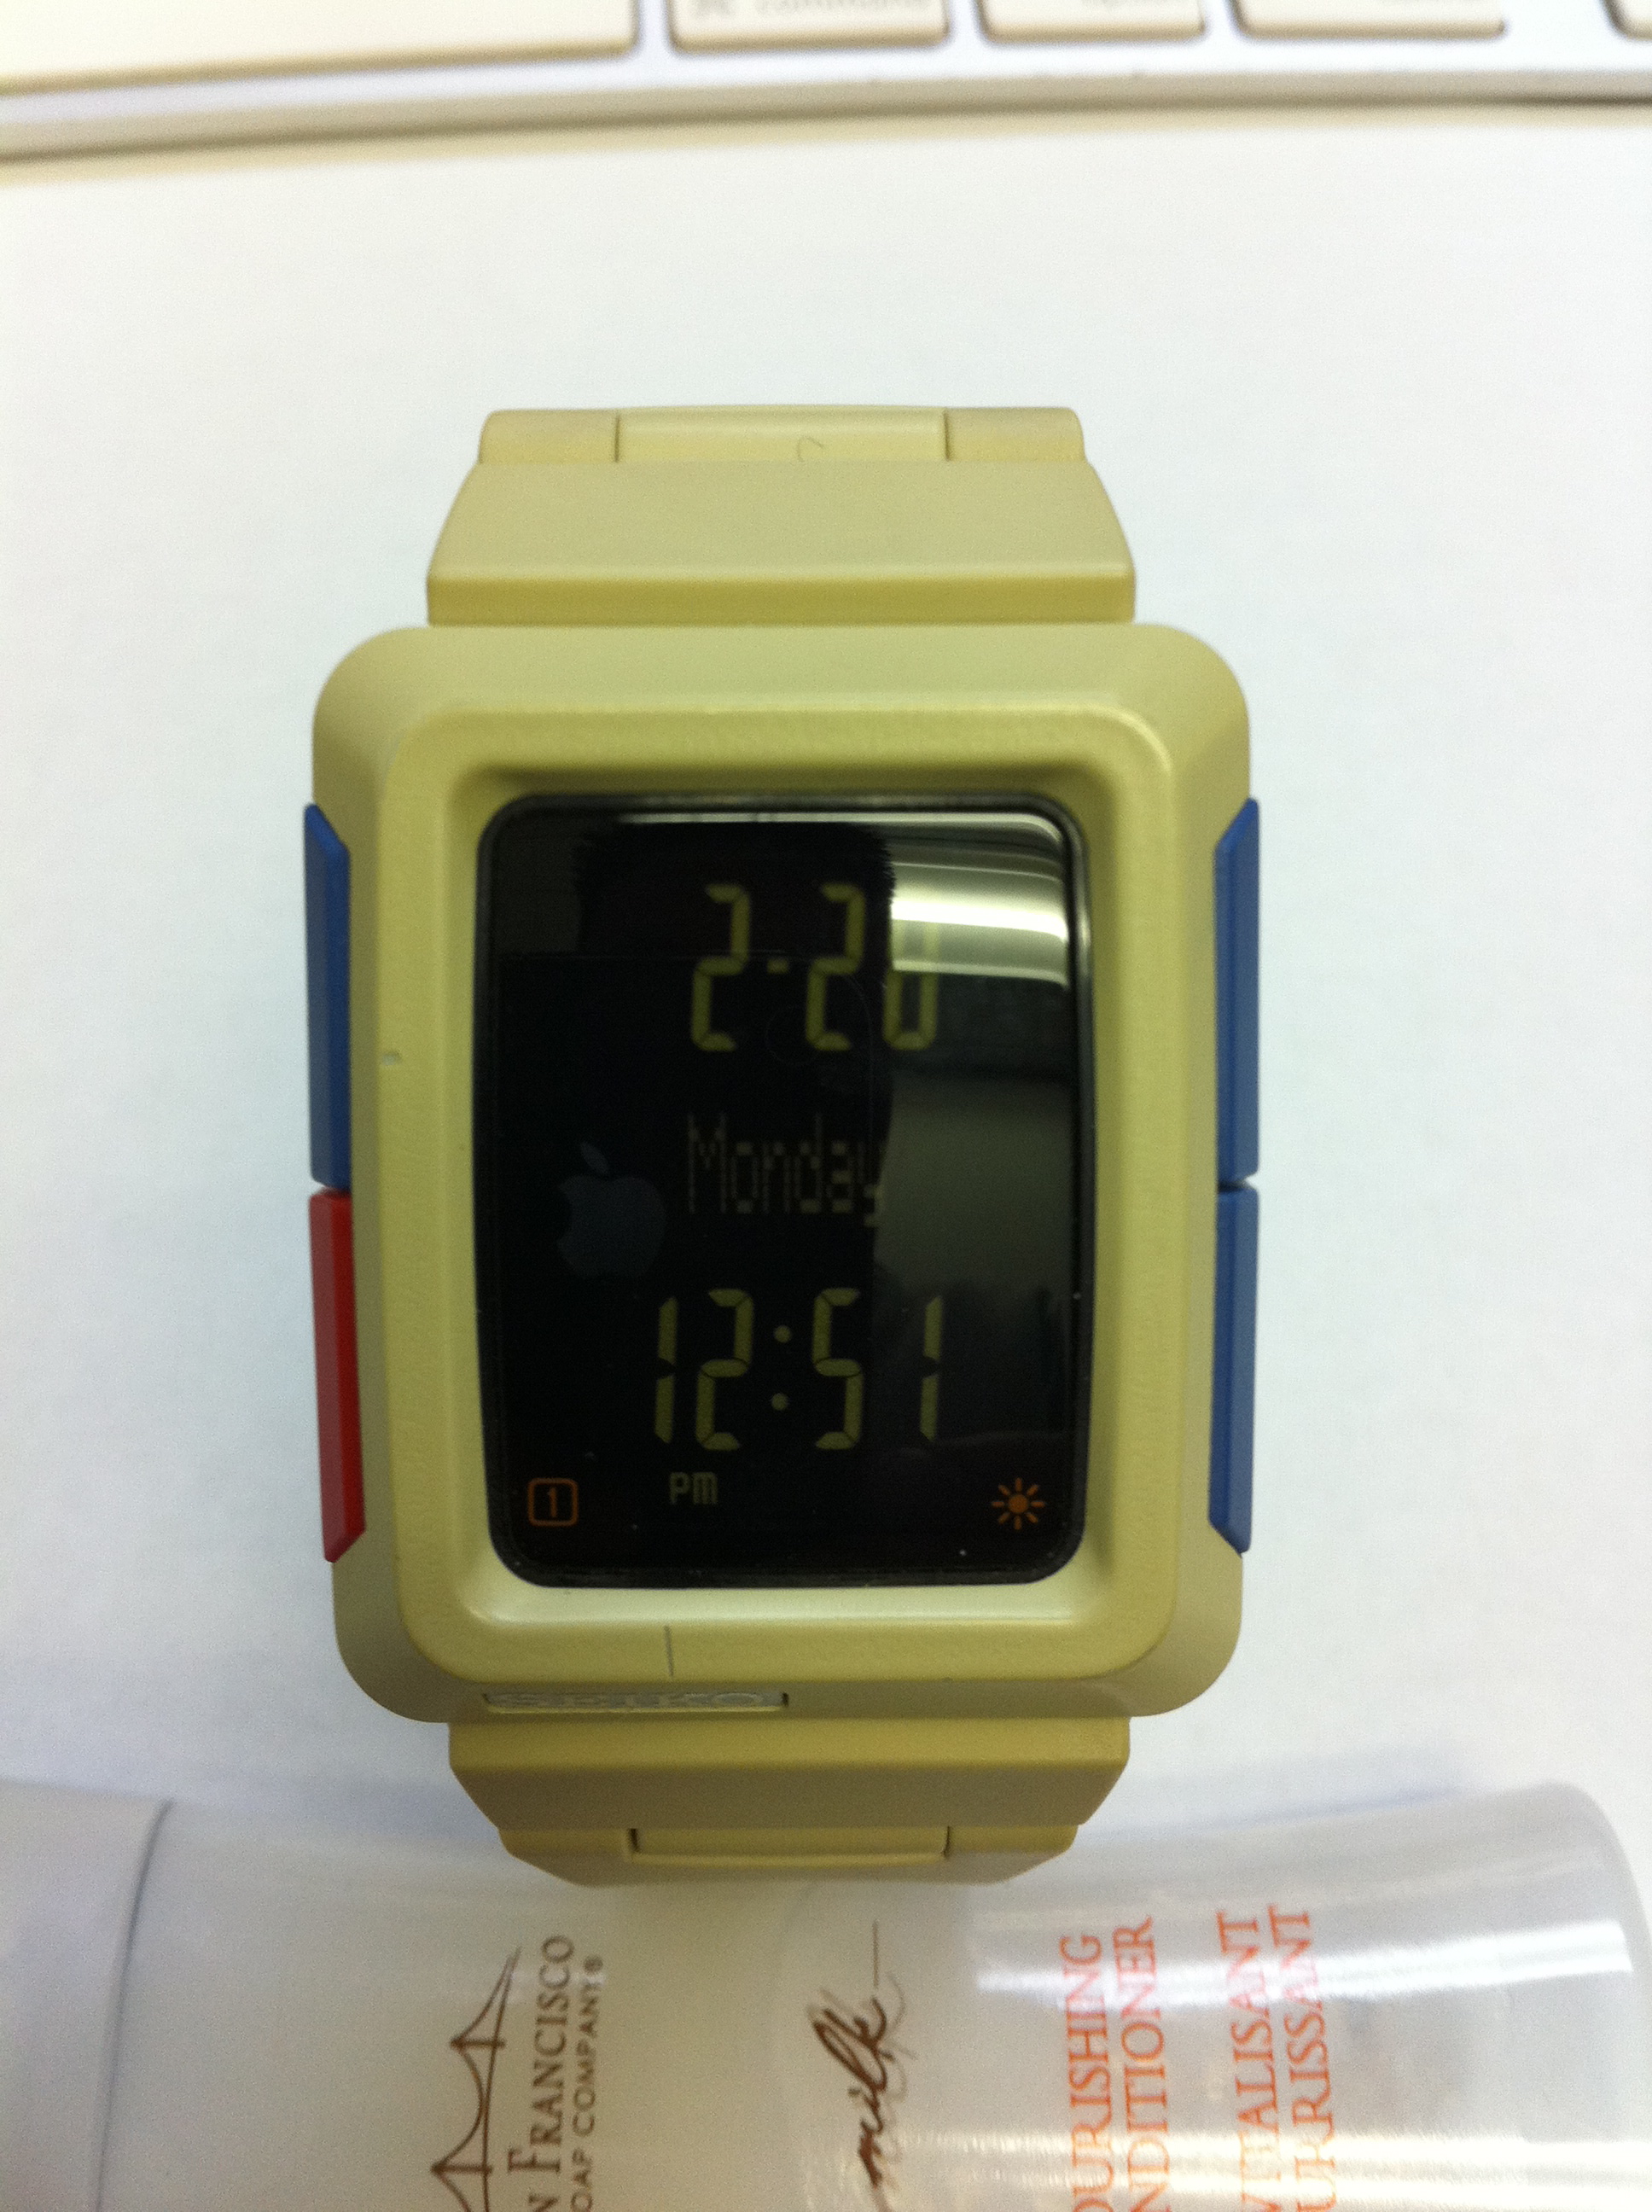 FS - Used but SUPER RARE Seiko H-Timetron SLIM Watch - $300 OBO 